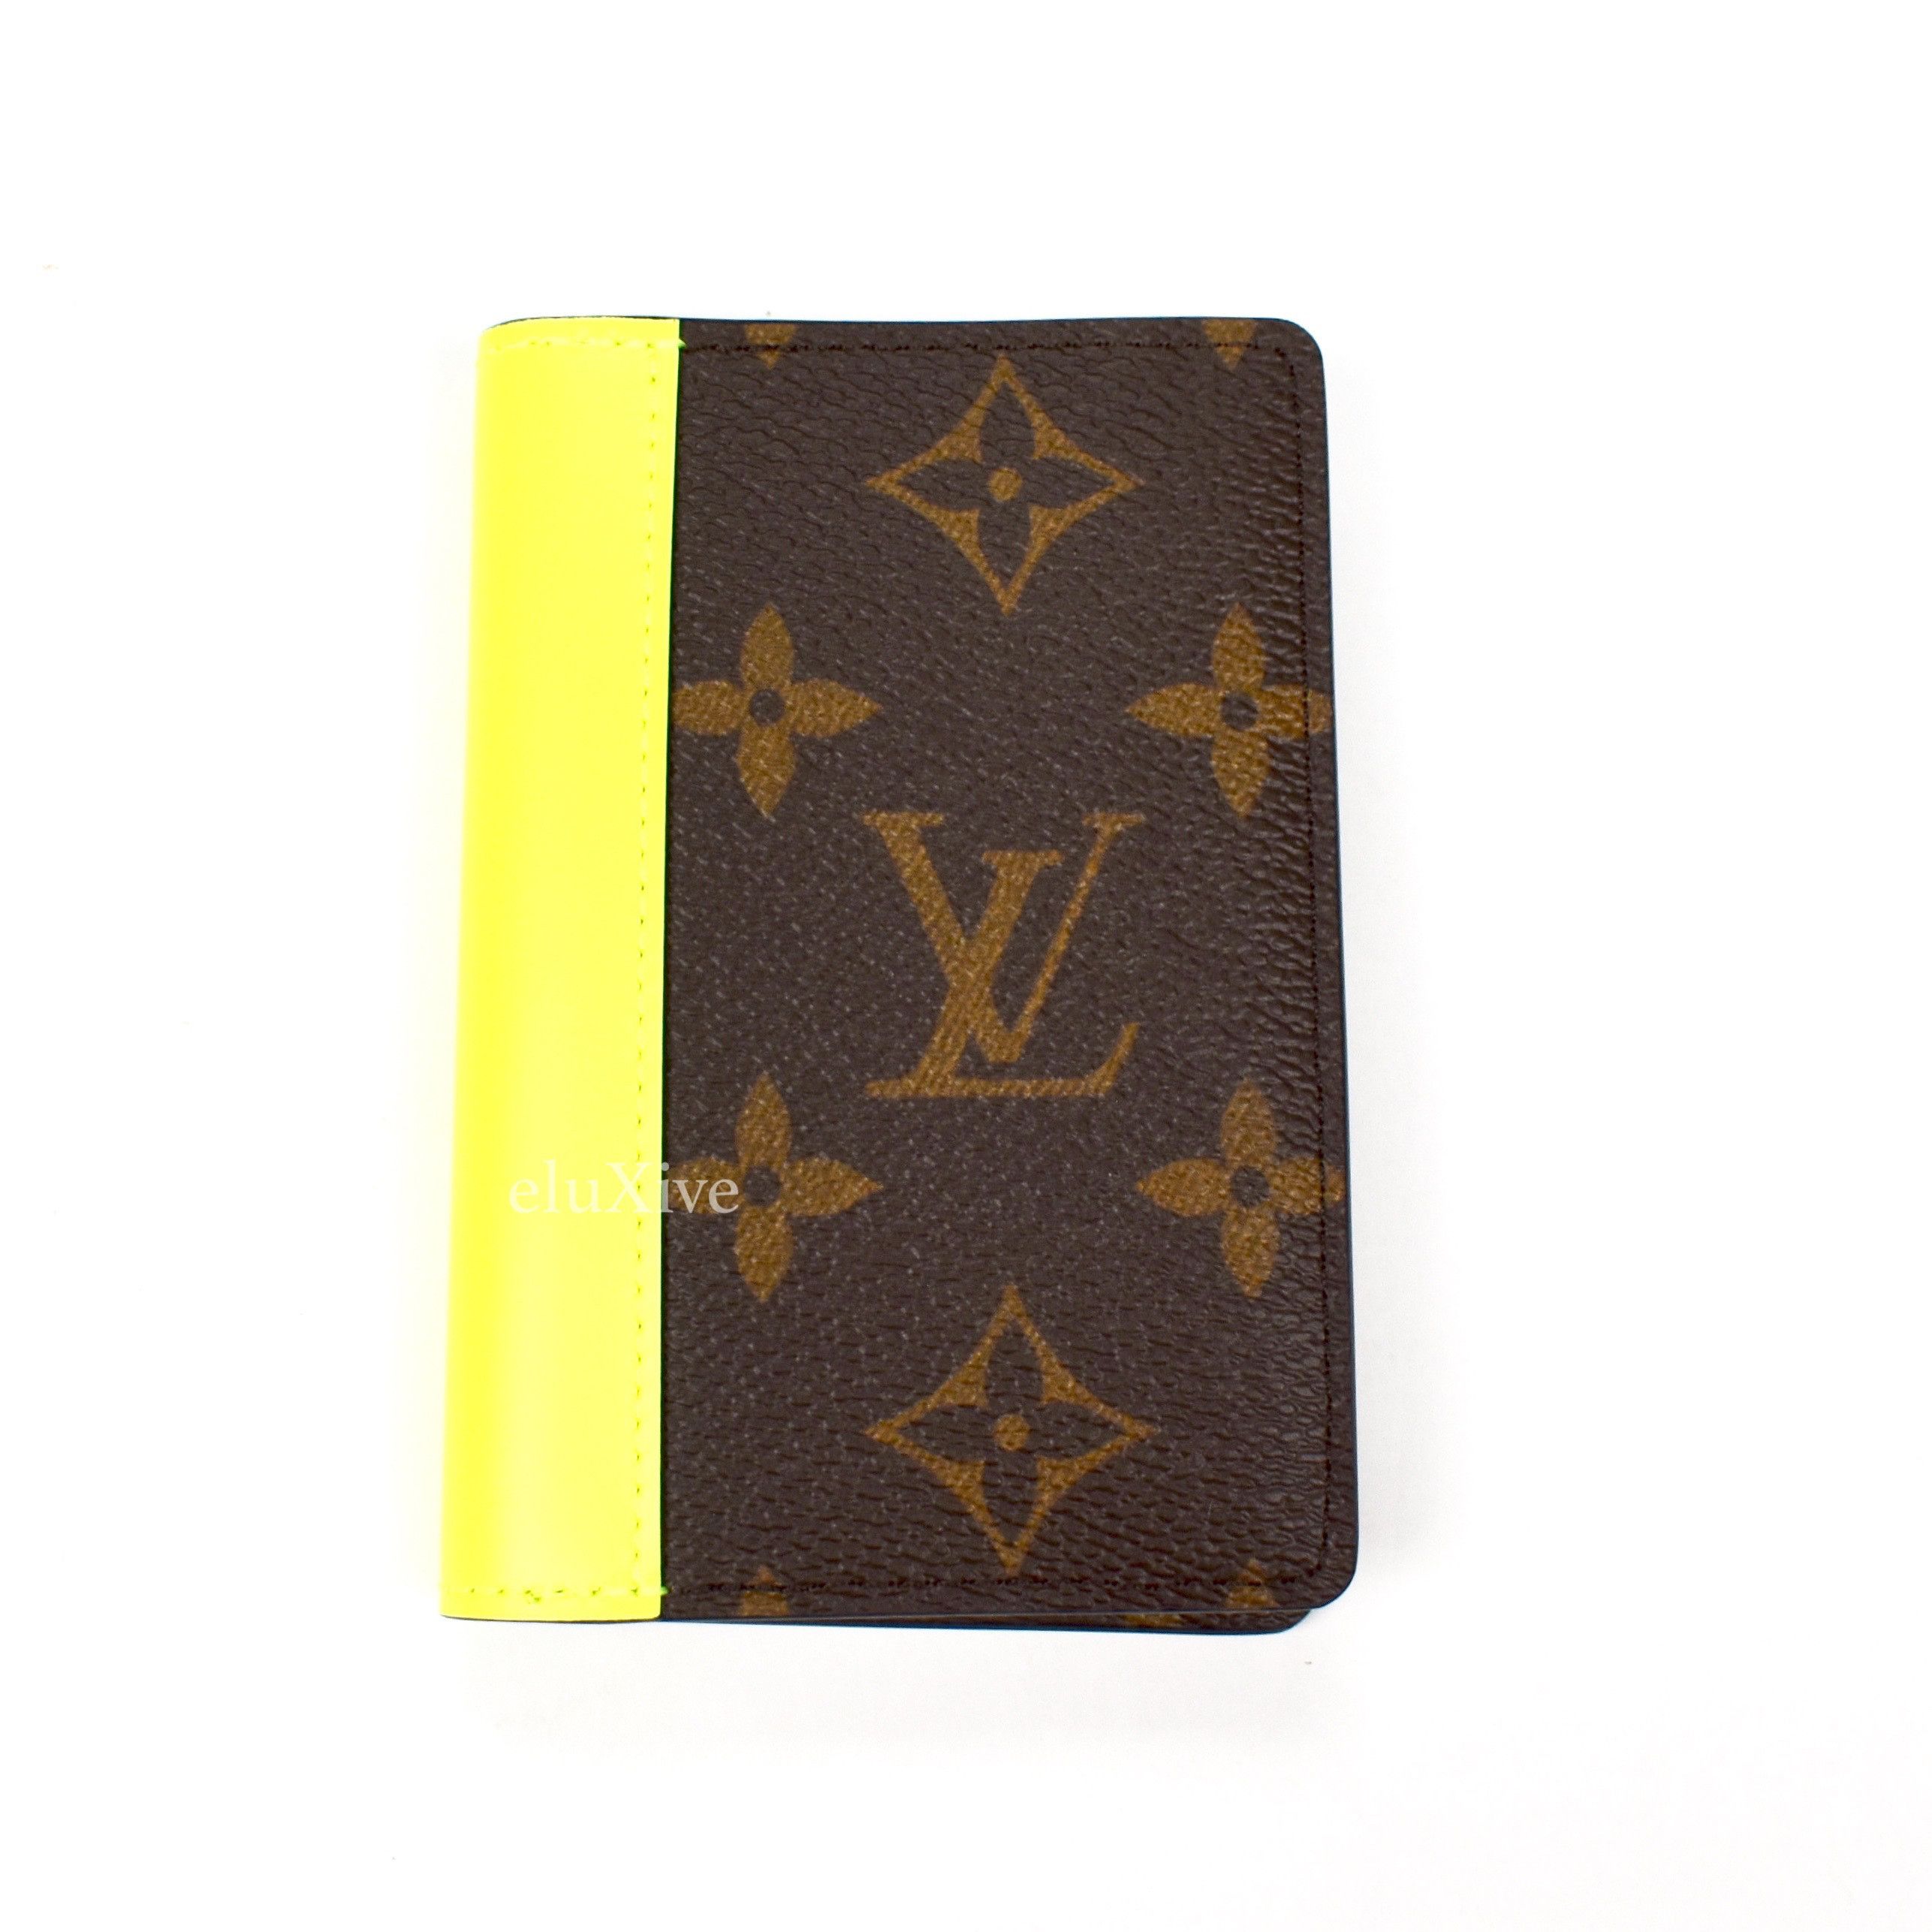 Louis Vuitton - Brown Monogram Macassar Pocket Organizer (Blue) – eluXive